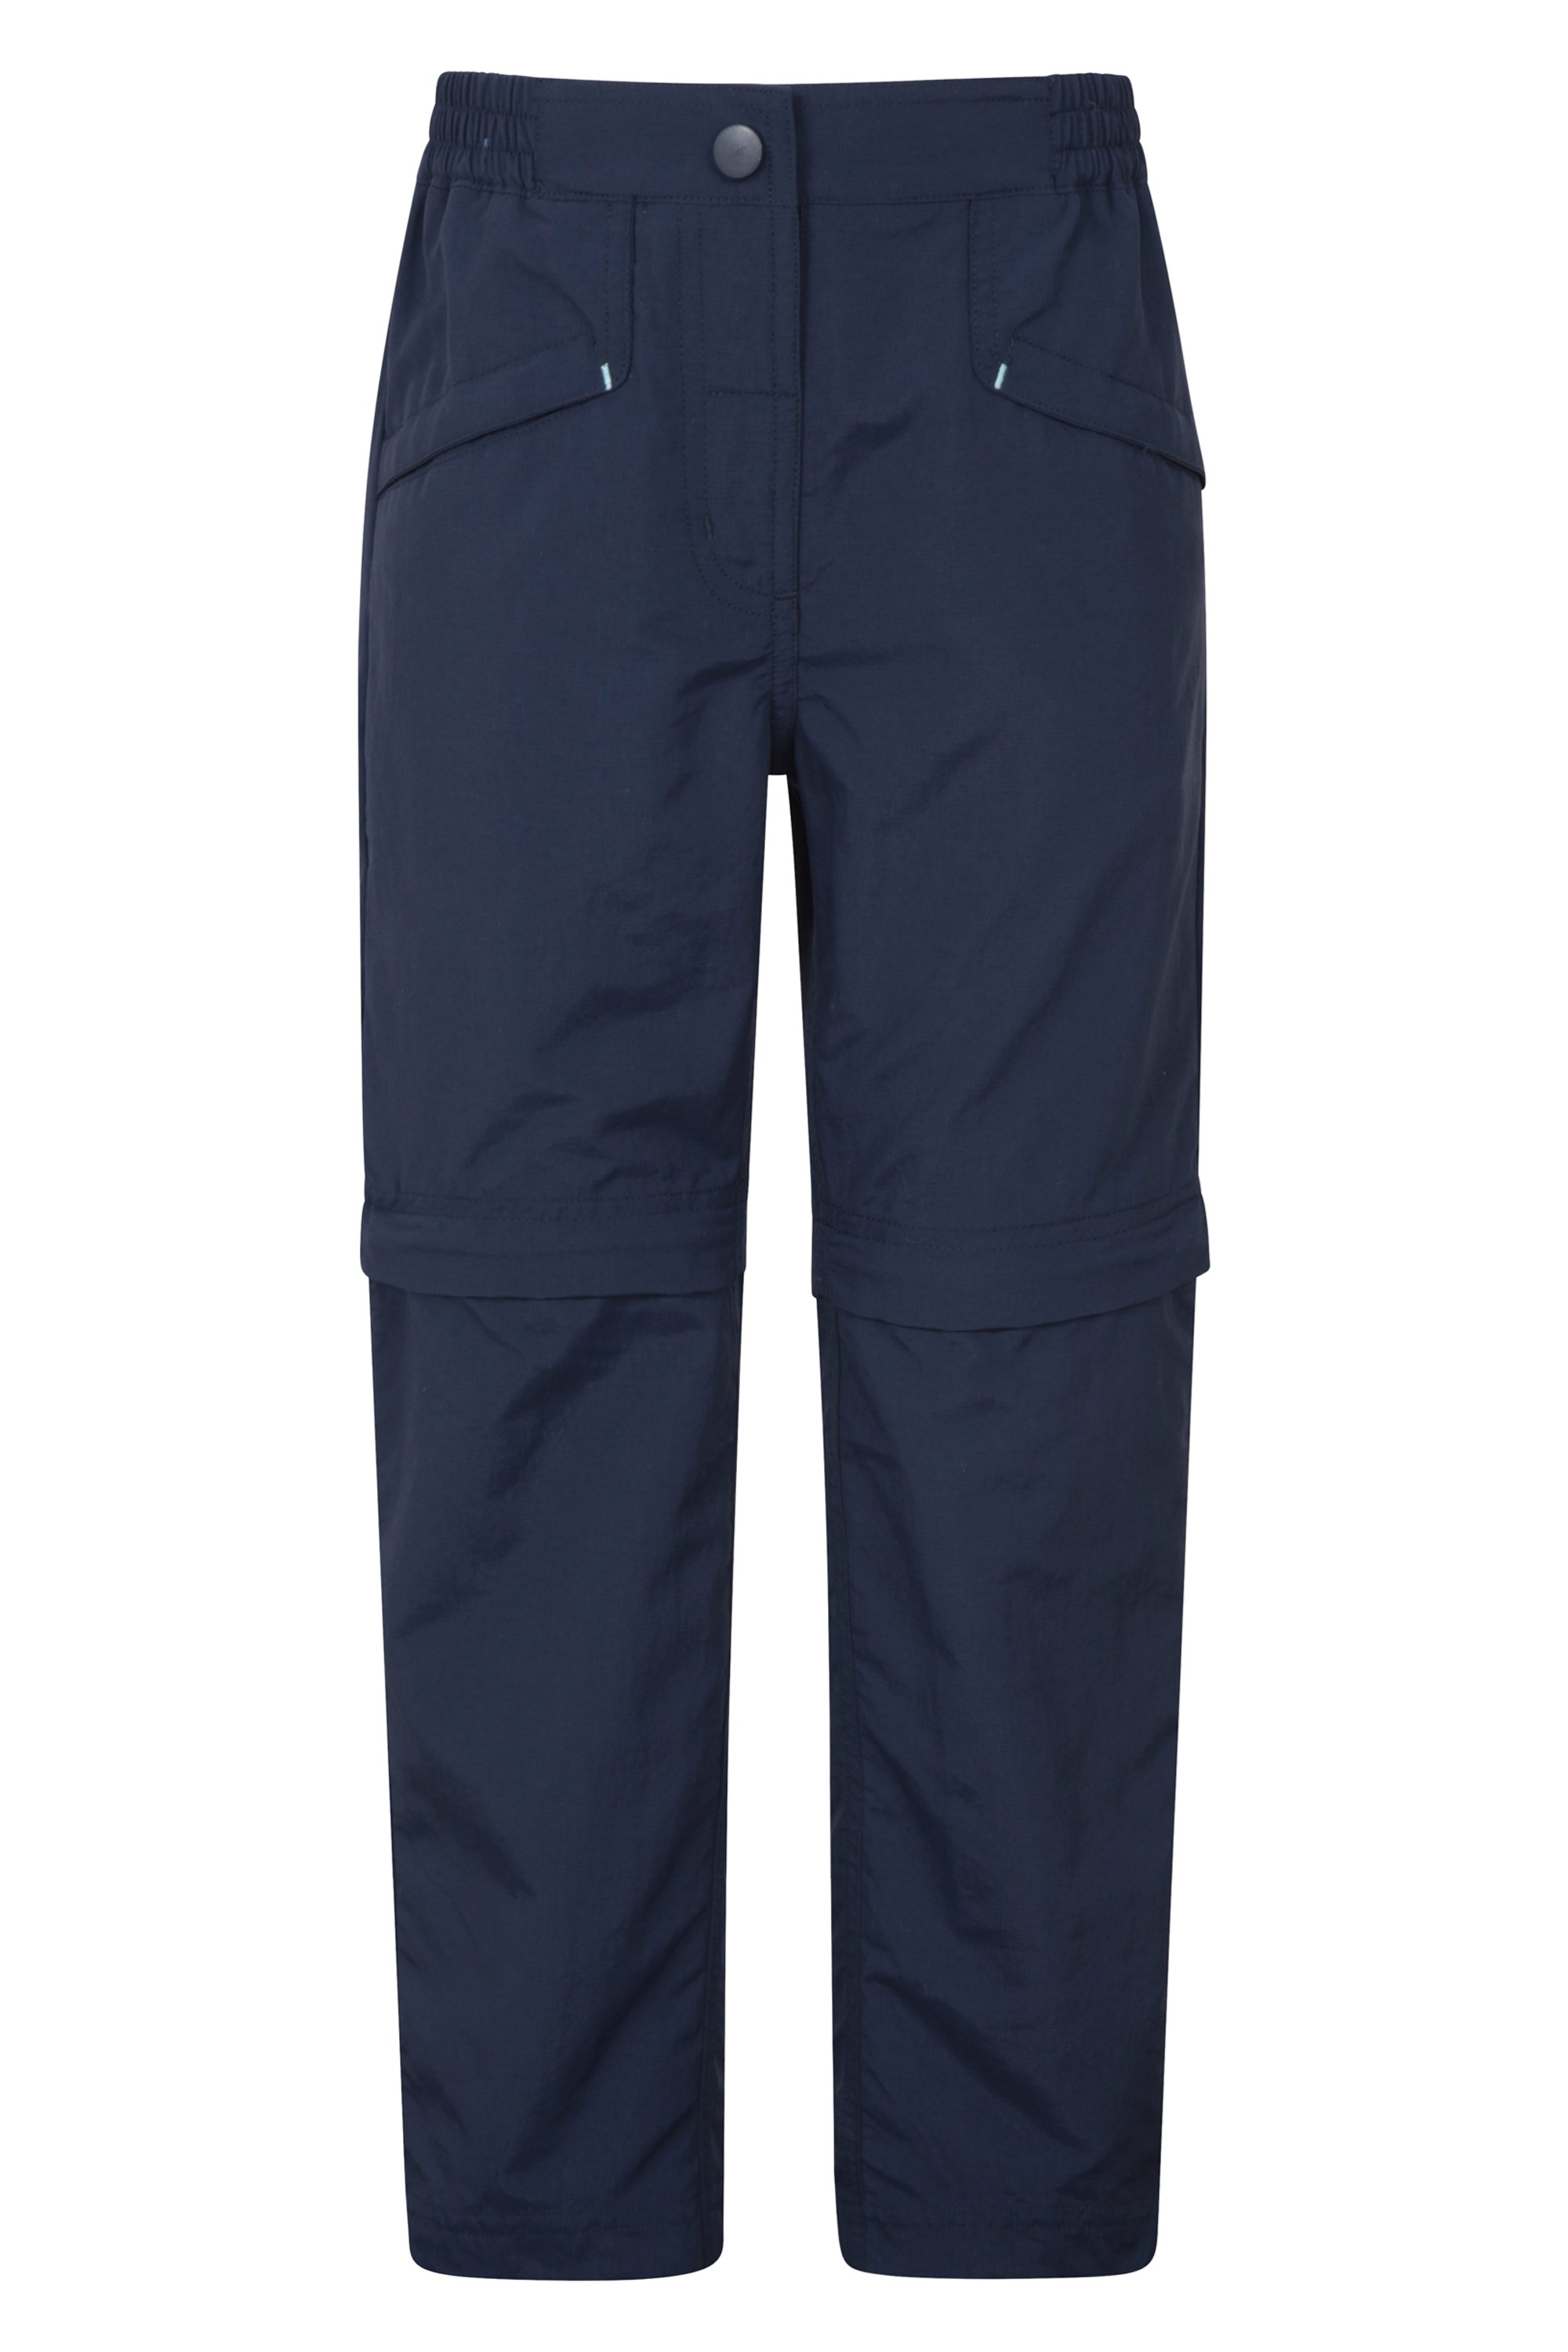 Pantalon Sahara léger antidéchirure - Bleu Marine